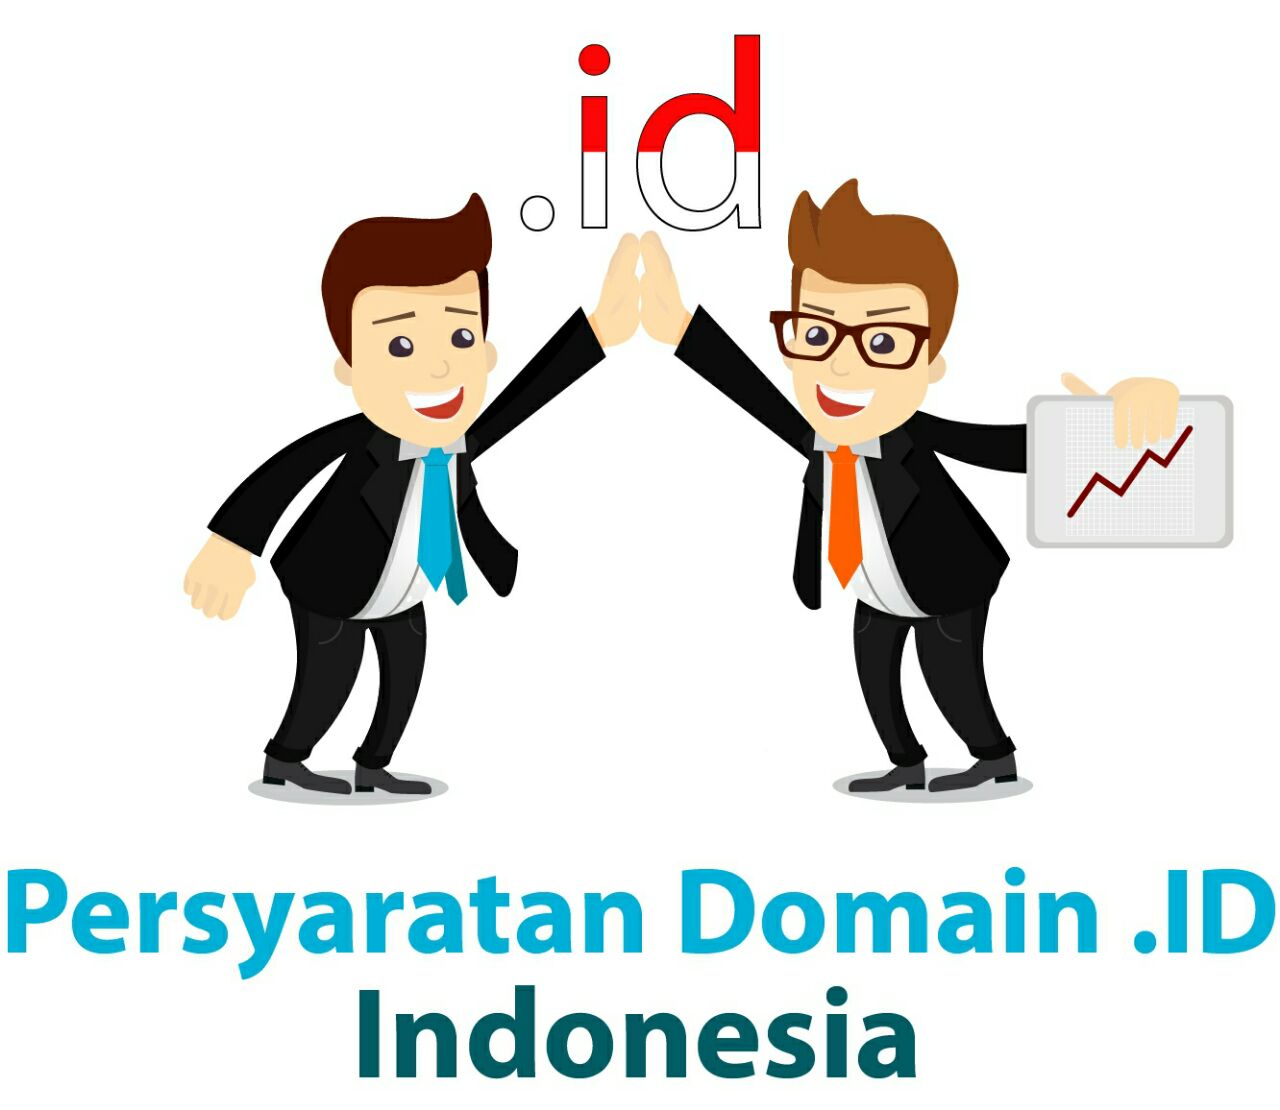 Persyaratan Domain .ID Indonesia